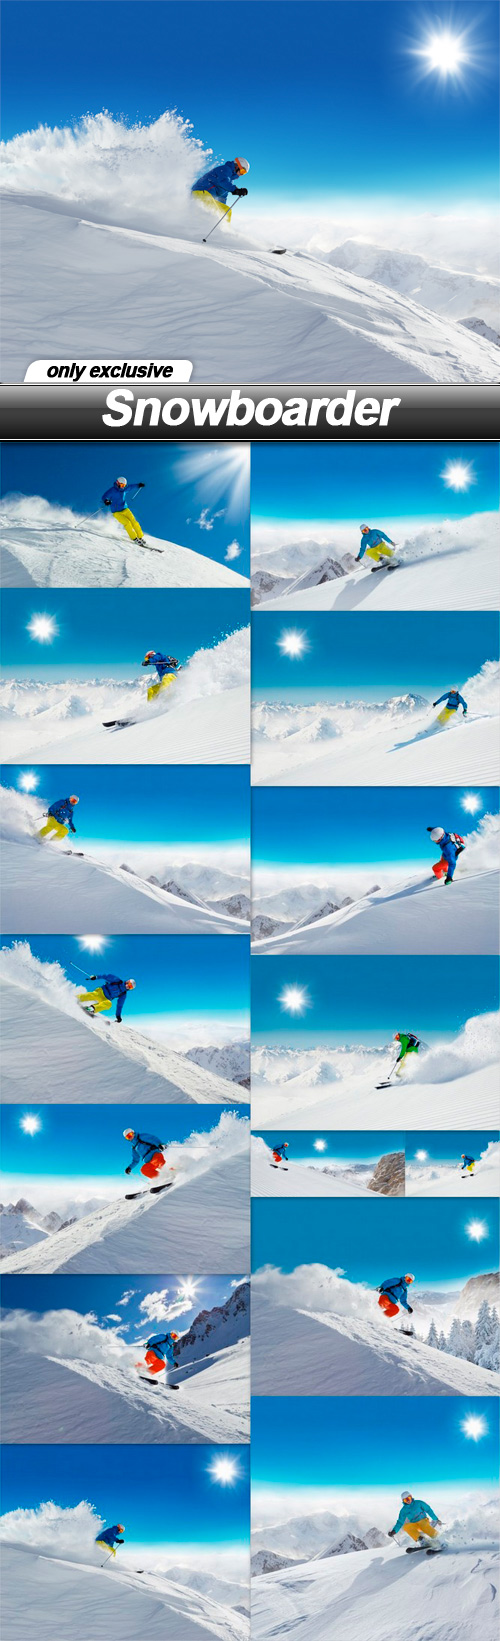 Snowboarder - 15 UHQ JPEG